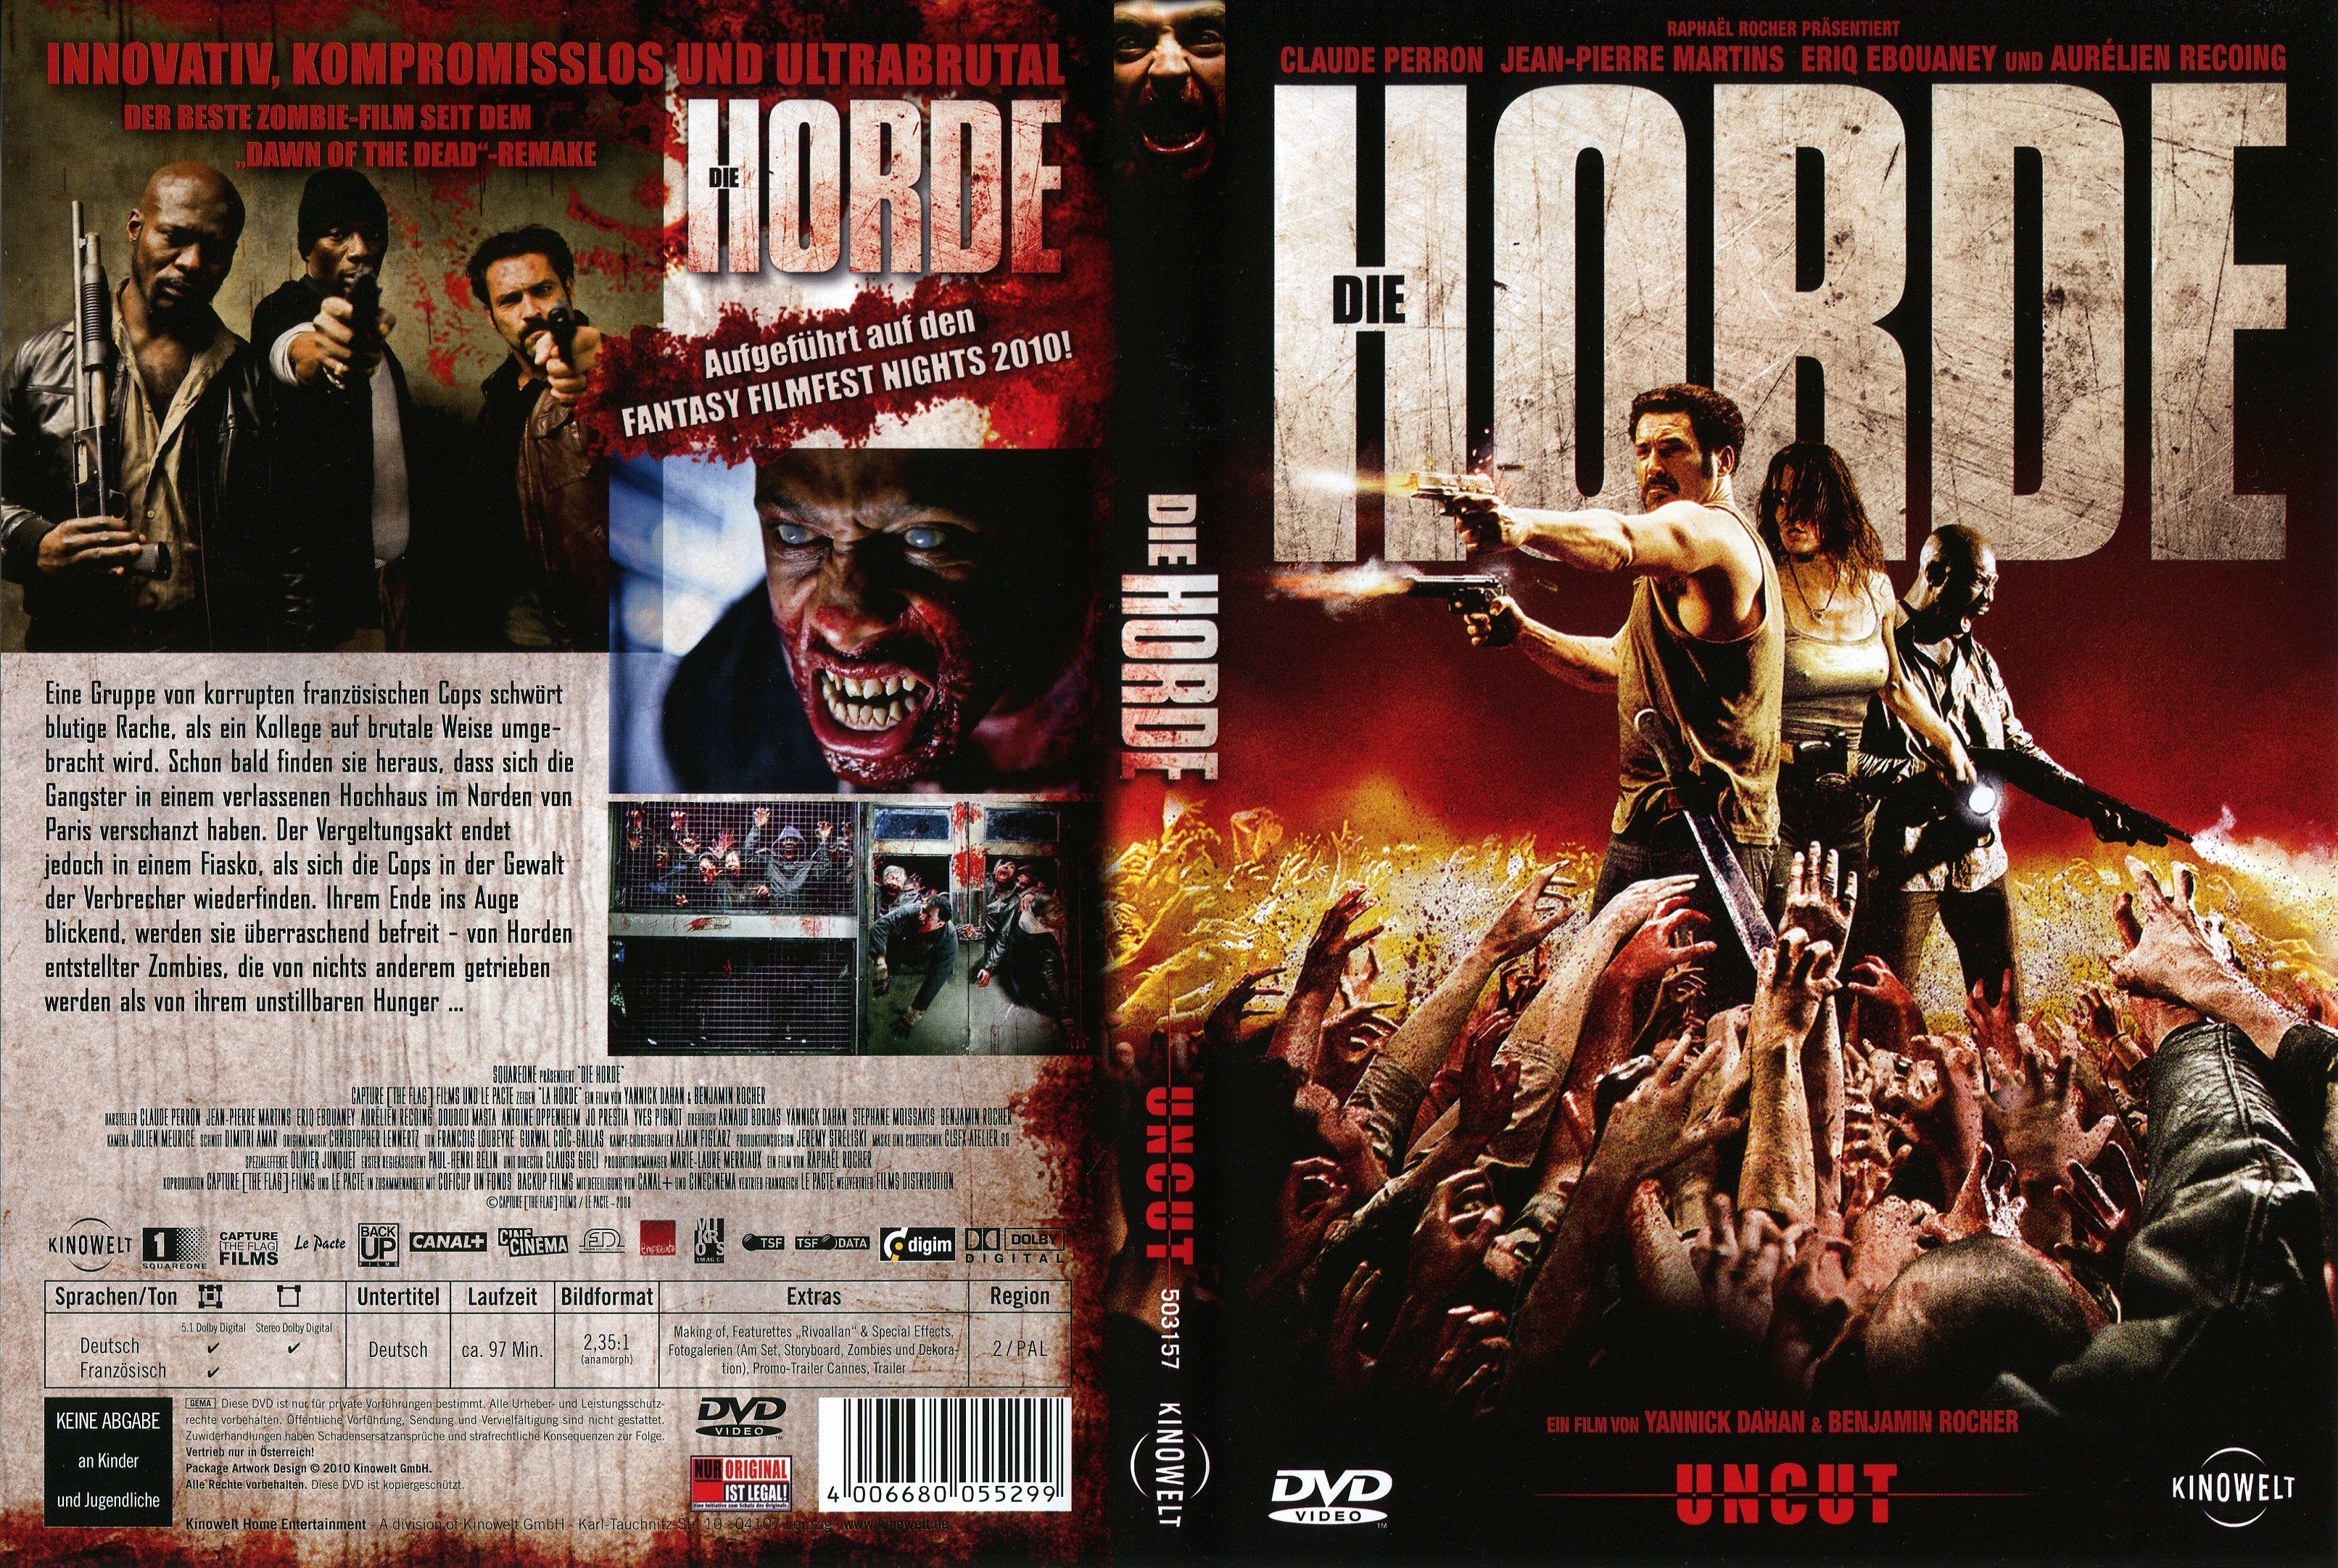 Die Horde | German DVD Covers